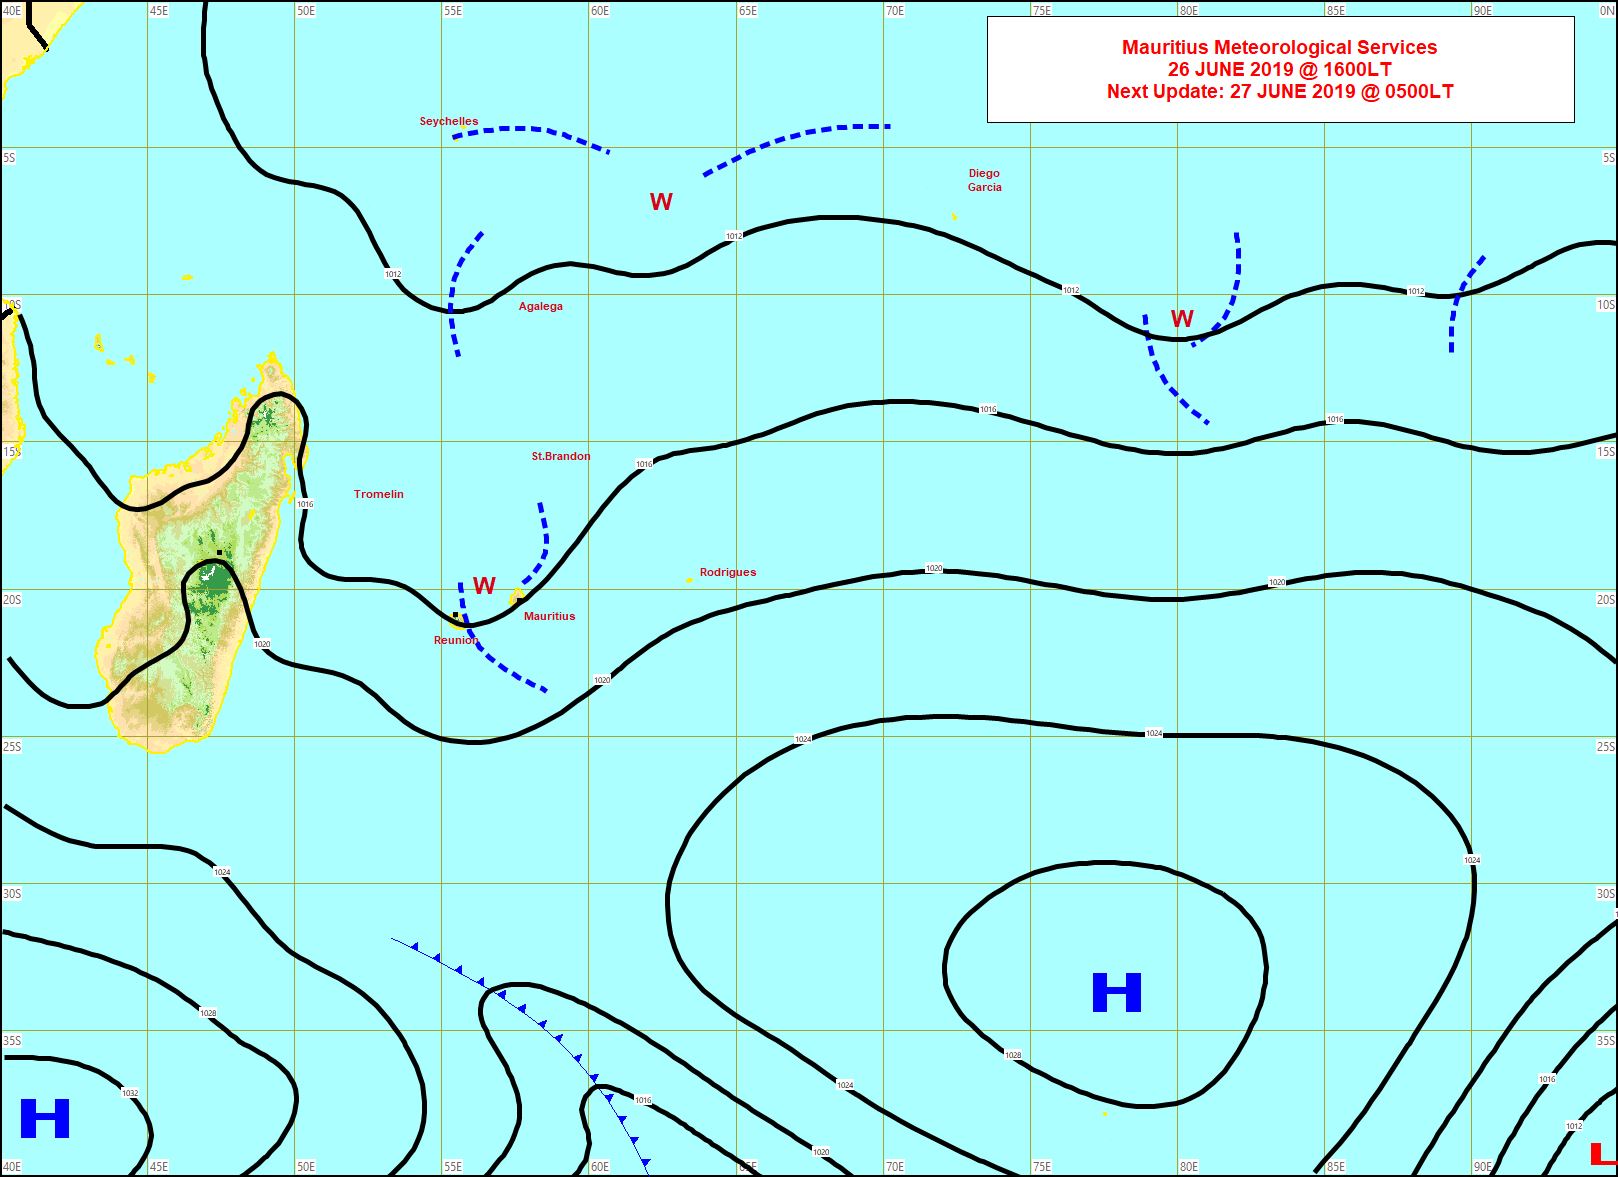 Situation à 16heures. La zone pluvieuse(w) se désagrège à proximité des Iles Soeurs. Un anticyclone s'approche graduellement de notre zone par le Sud-Ouest. MMS